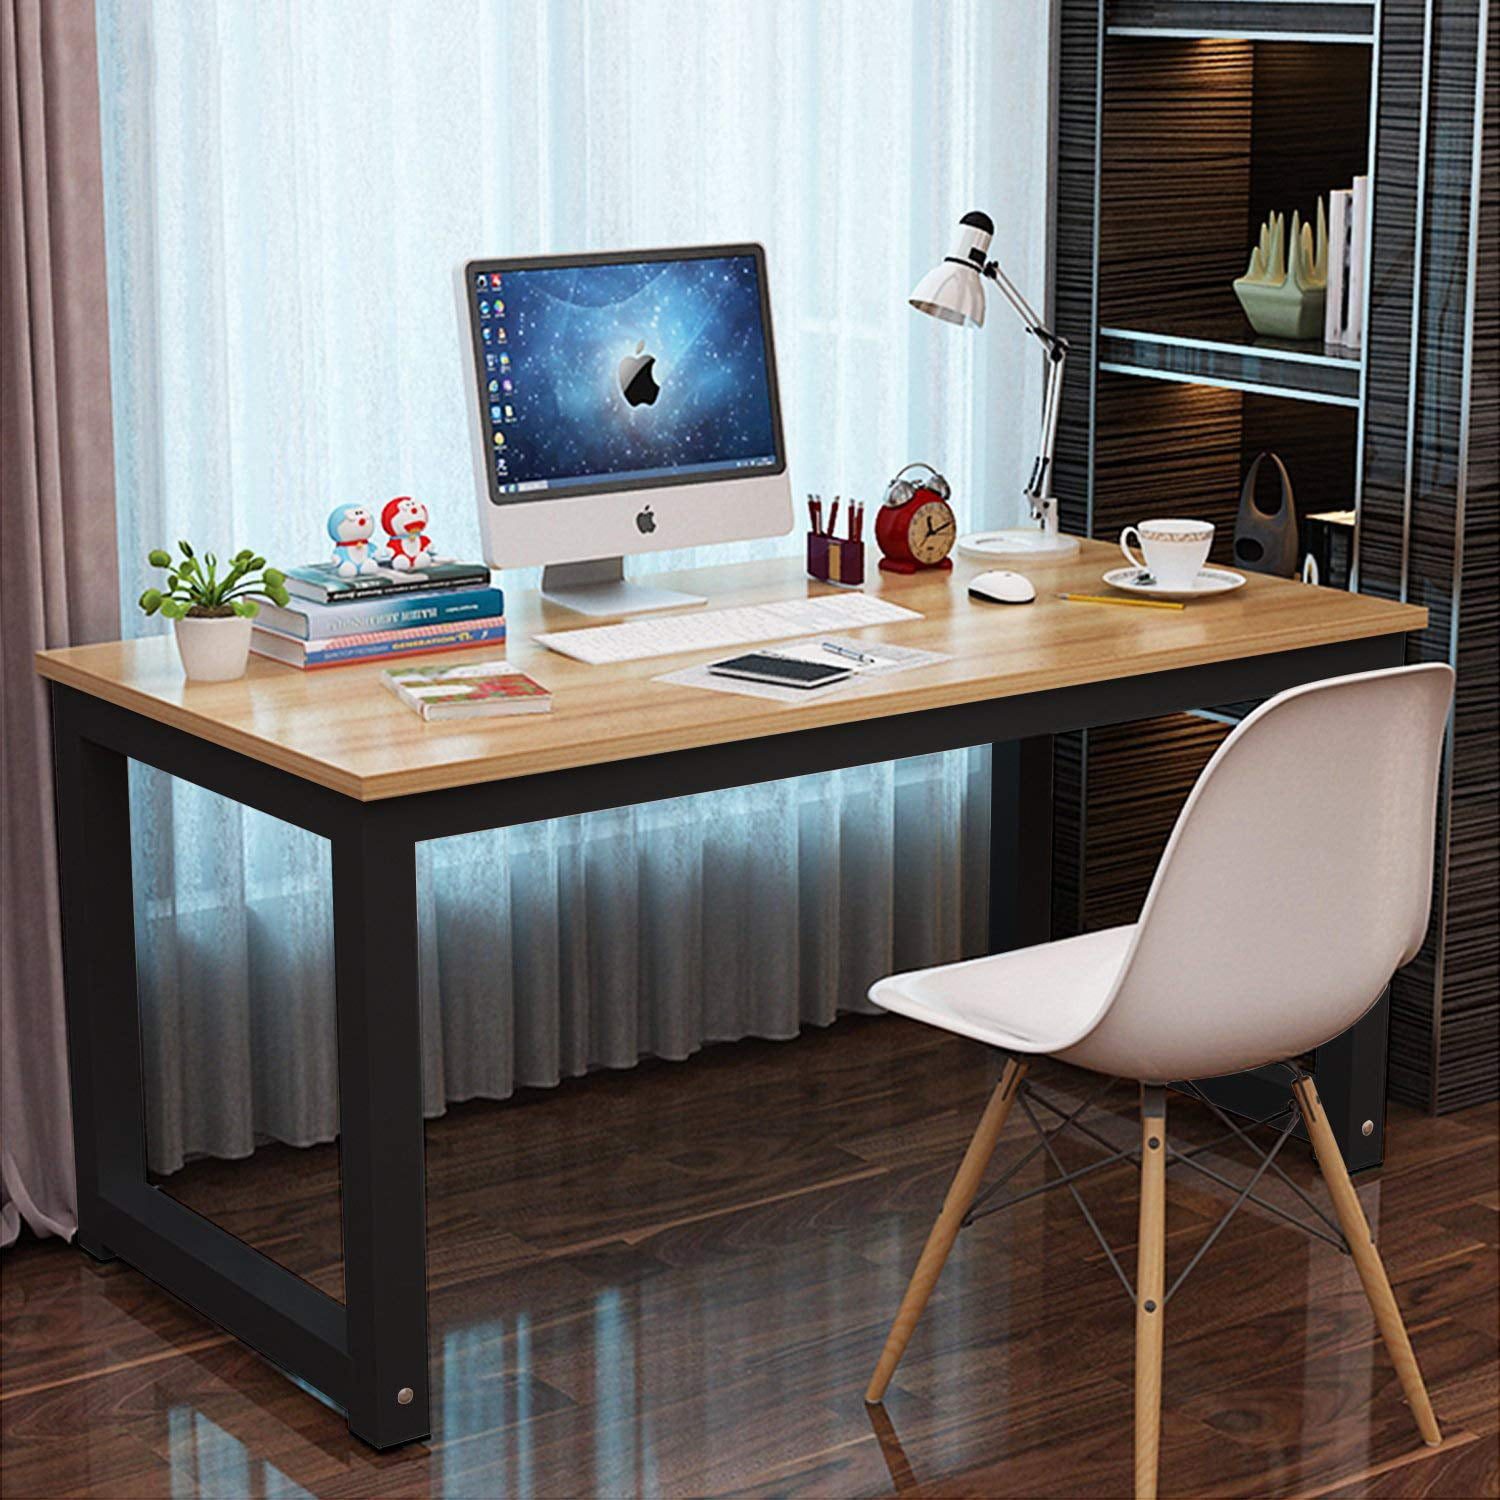 Professional Office Desk Wood & Steel Table Modern Plain Lap Desk